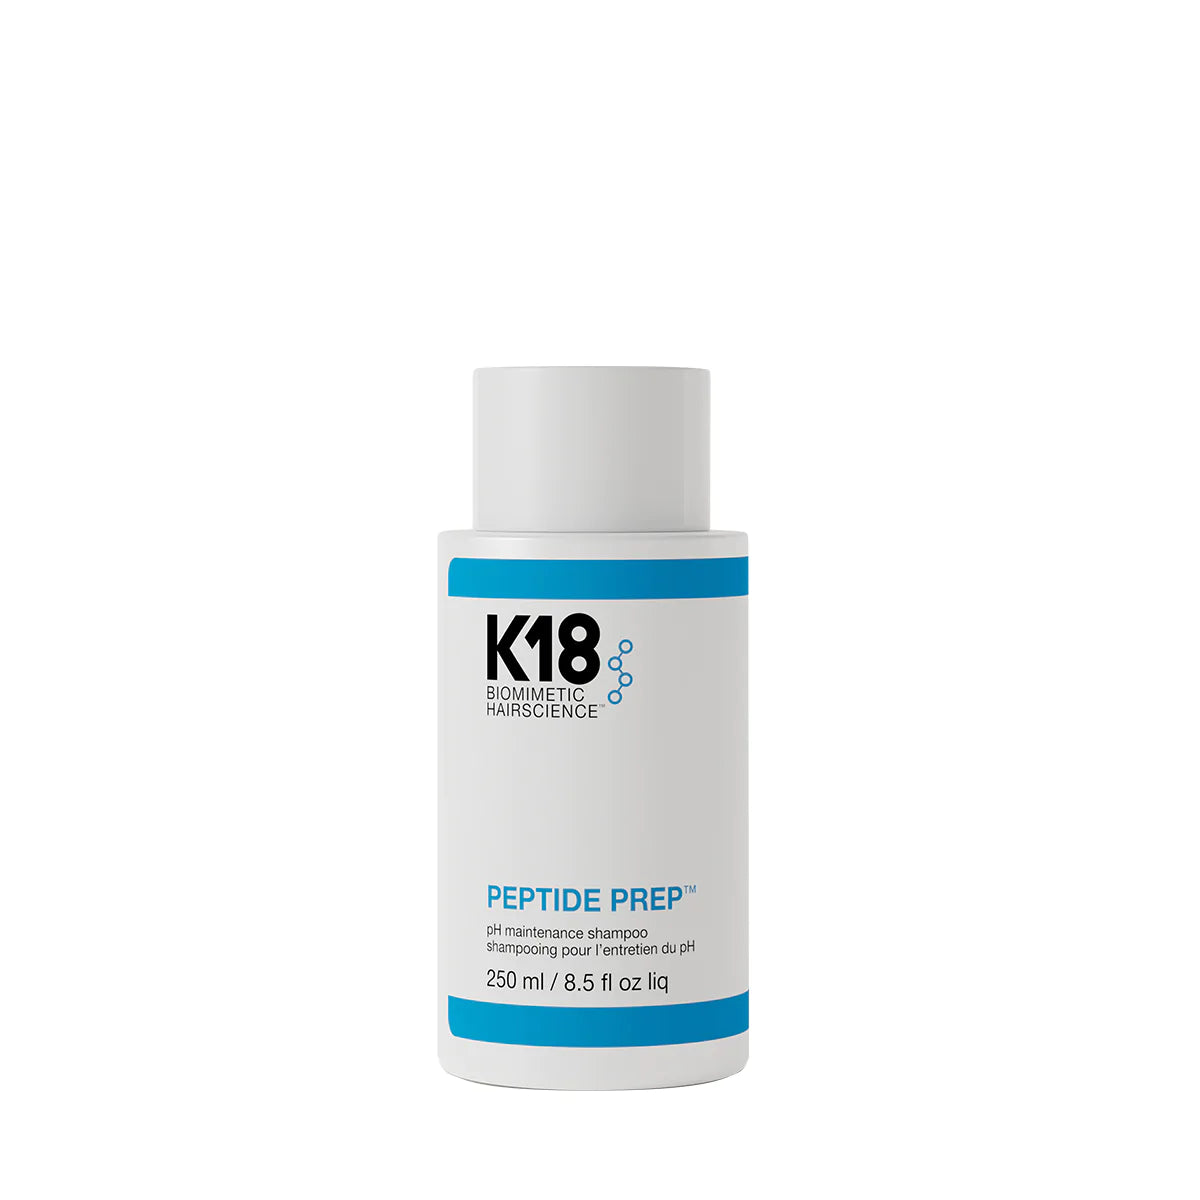 K18 PEPTIDE PREP pH maintenance shampoo ja 15ml maski